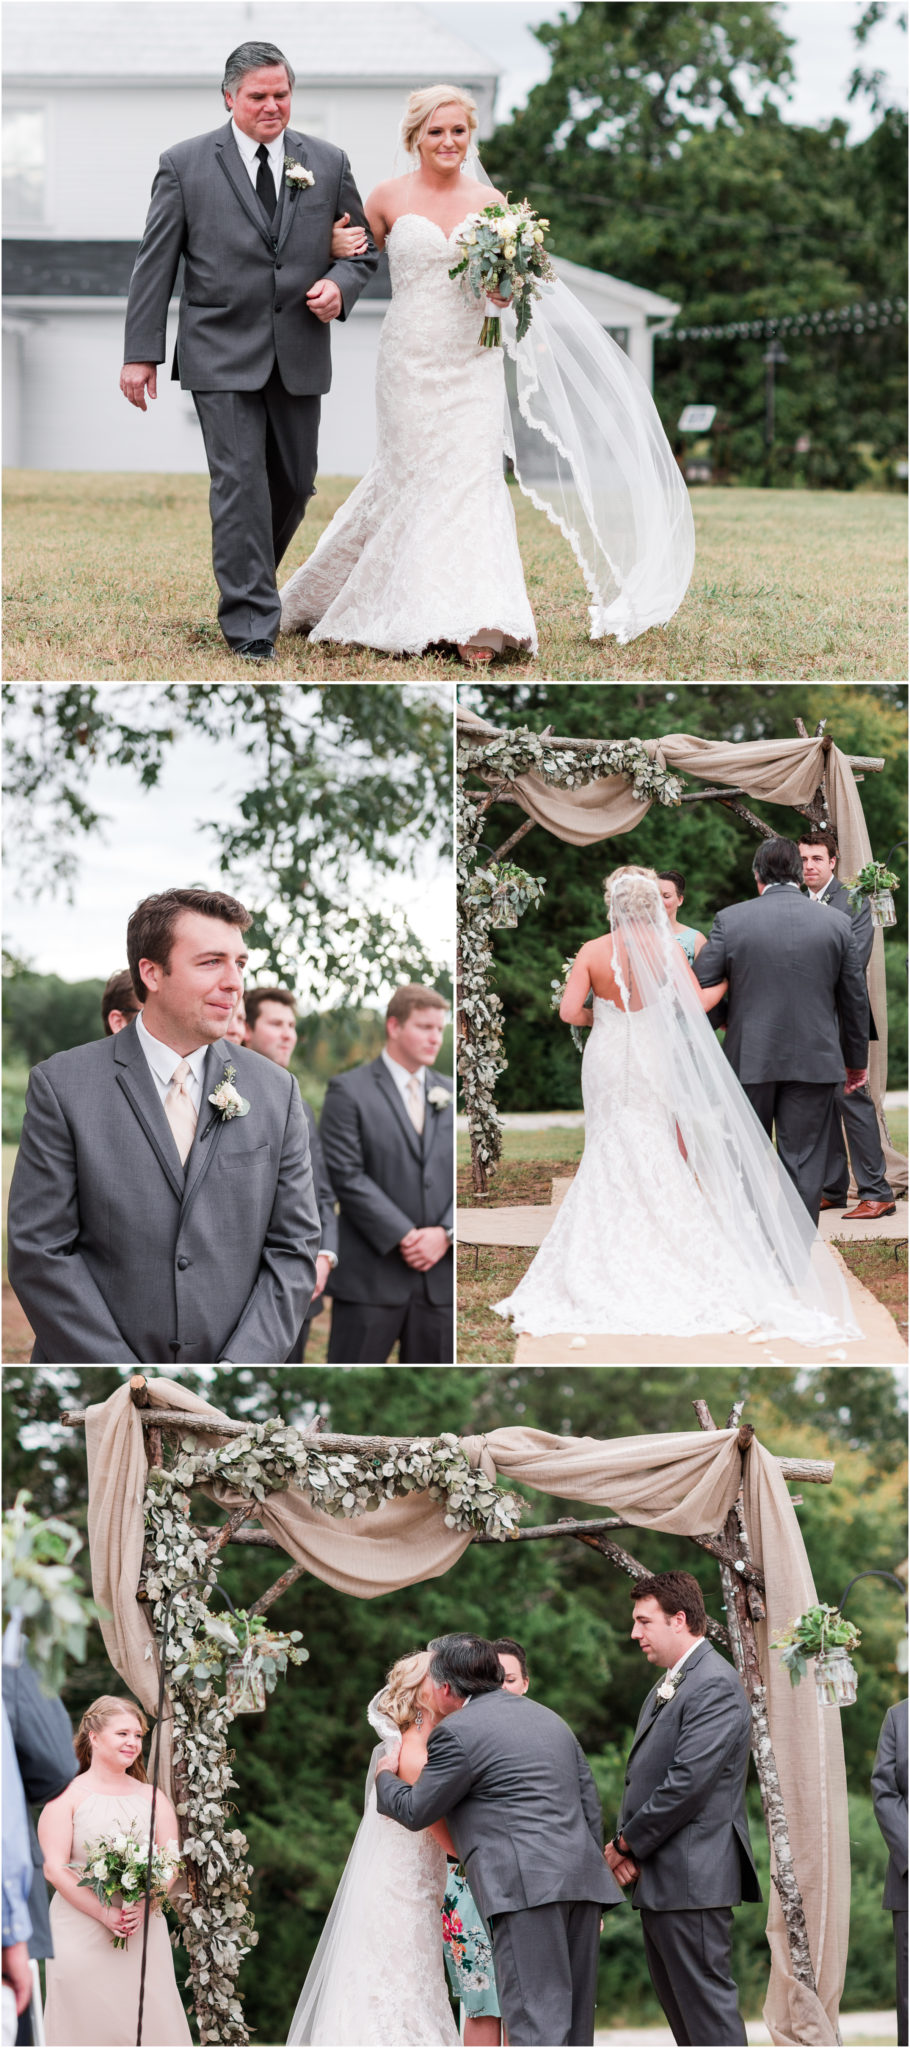 An Ellery Farms Wedding in Woodruff South Carolina outdoor wedding ceremony